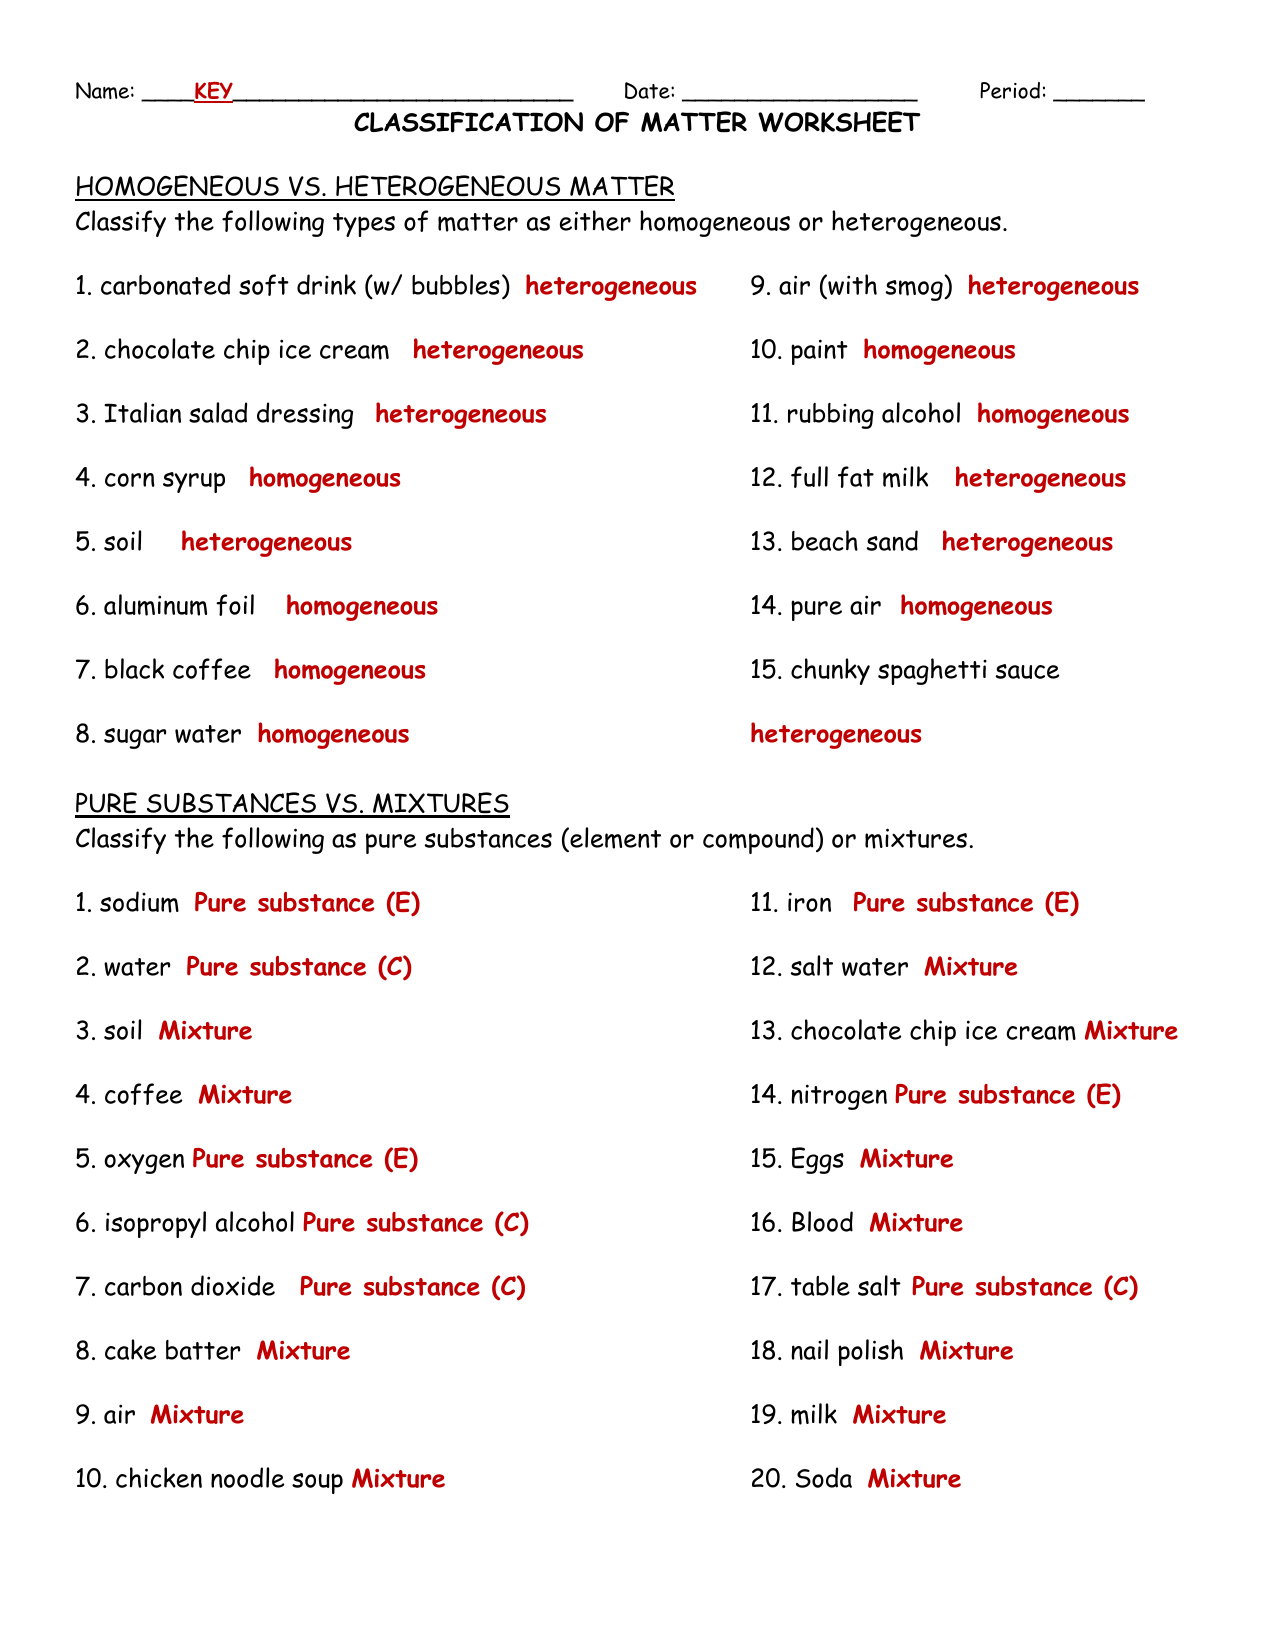 classifying-matter-worksheet-22 Intended For Classifying Matter Worksheet Answers